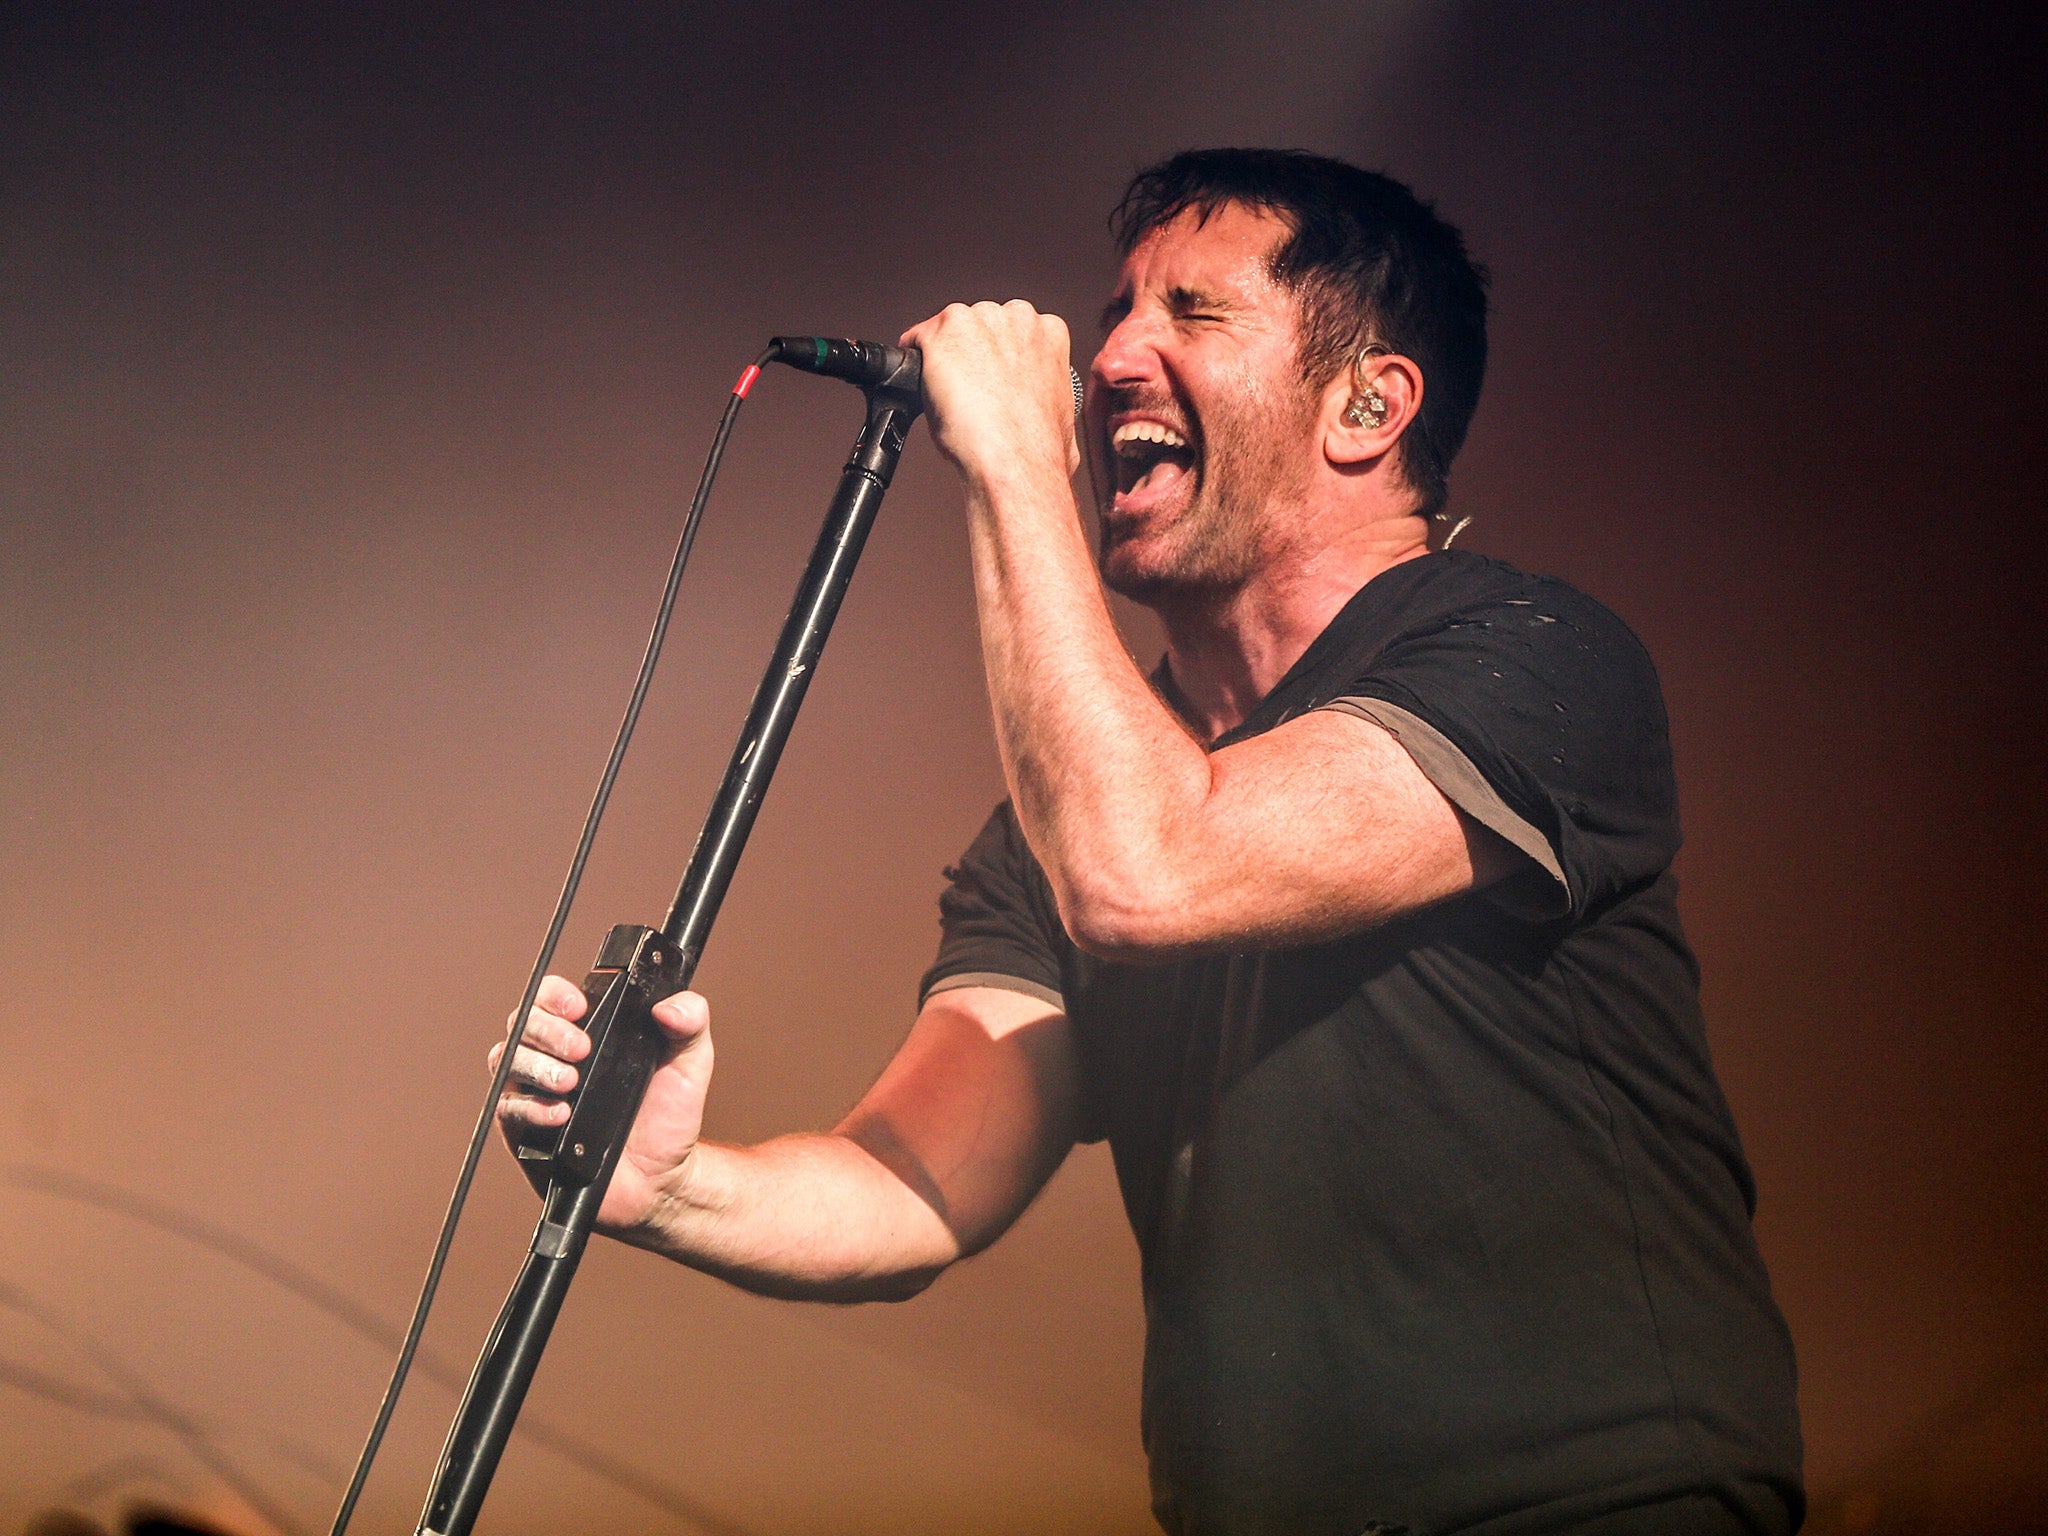 Nine Inch Nails – "Hurt"